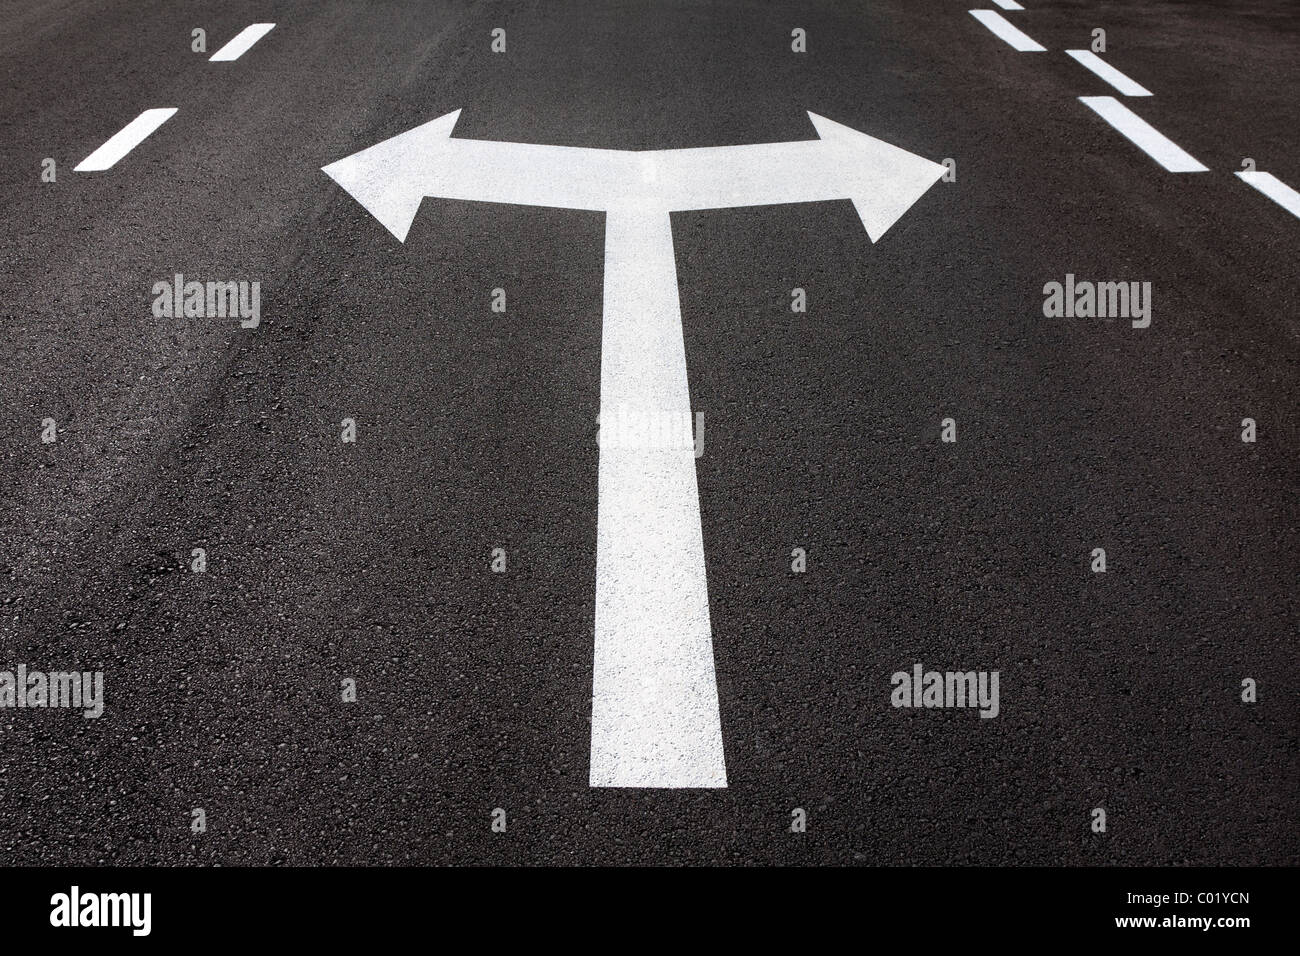 Las flechas de giro izquierdo y derecho pintado sobre asfalto de carretera. Concepto para girar, decisión, elección, de qué manera, a la derecha, a la izquierda. Foto de stock